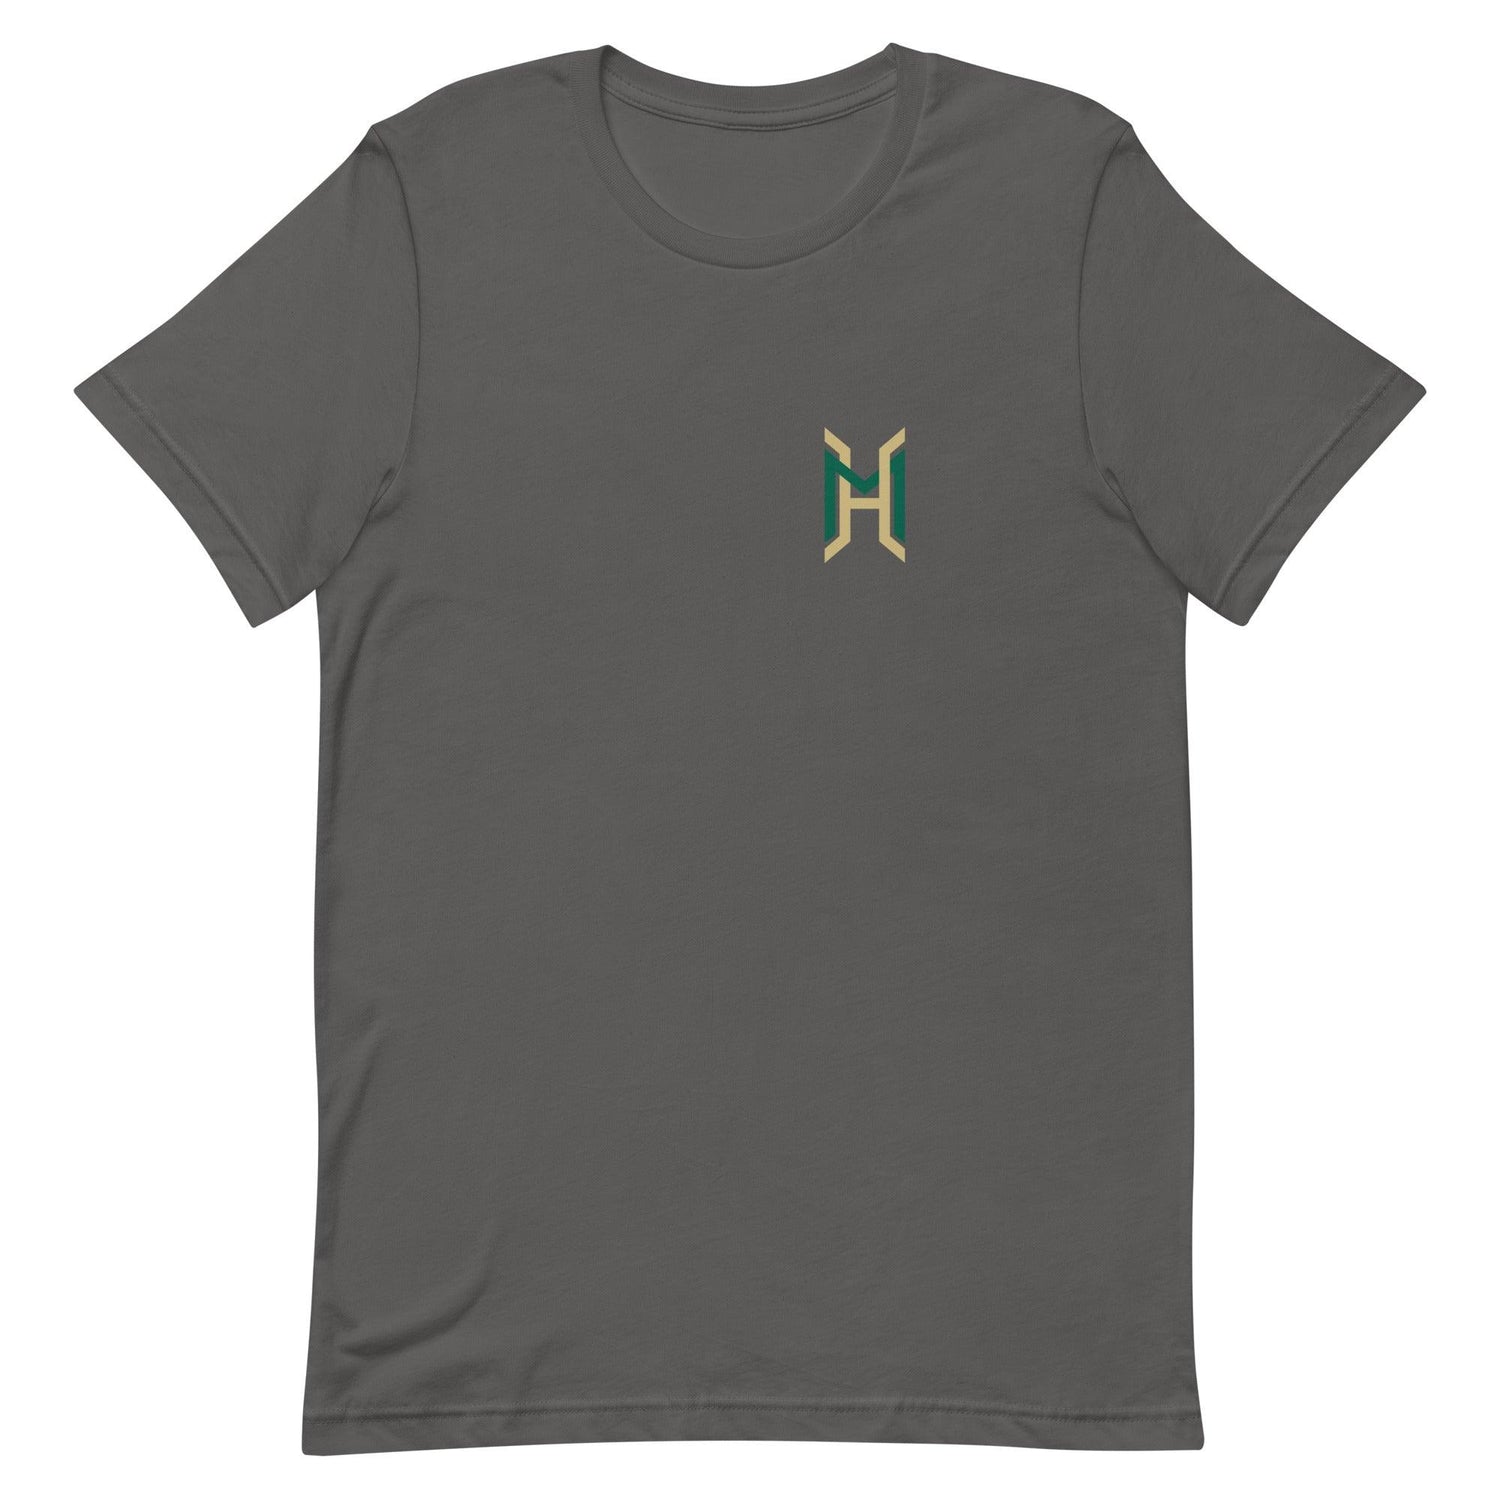 Hunter Mink "Elite" t-shirt - Fan Arch